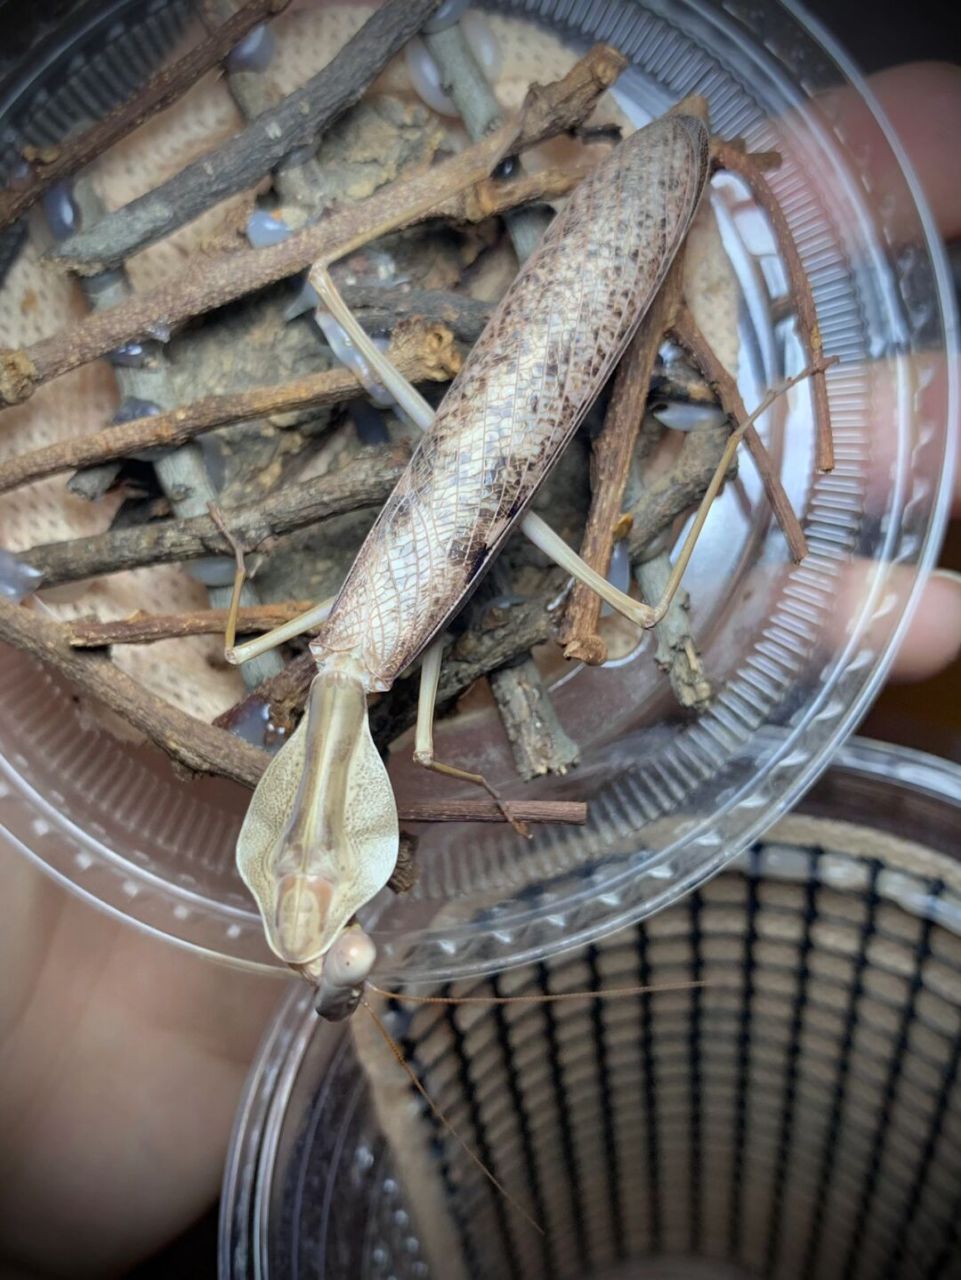 克氏菱背螳雄性成虫～ 产于印尼的帝汶岛,这只是杂斑咸菜色[笑哭]